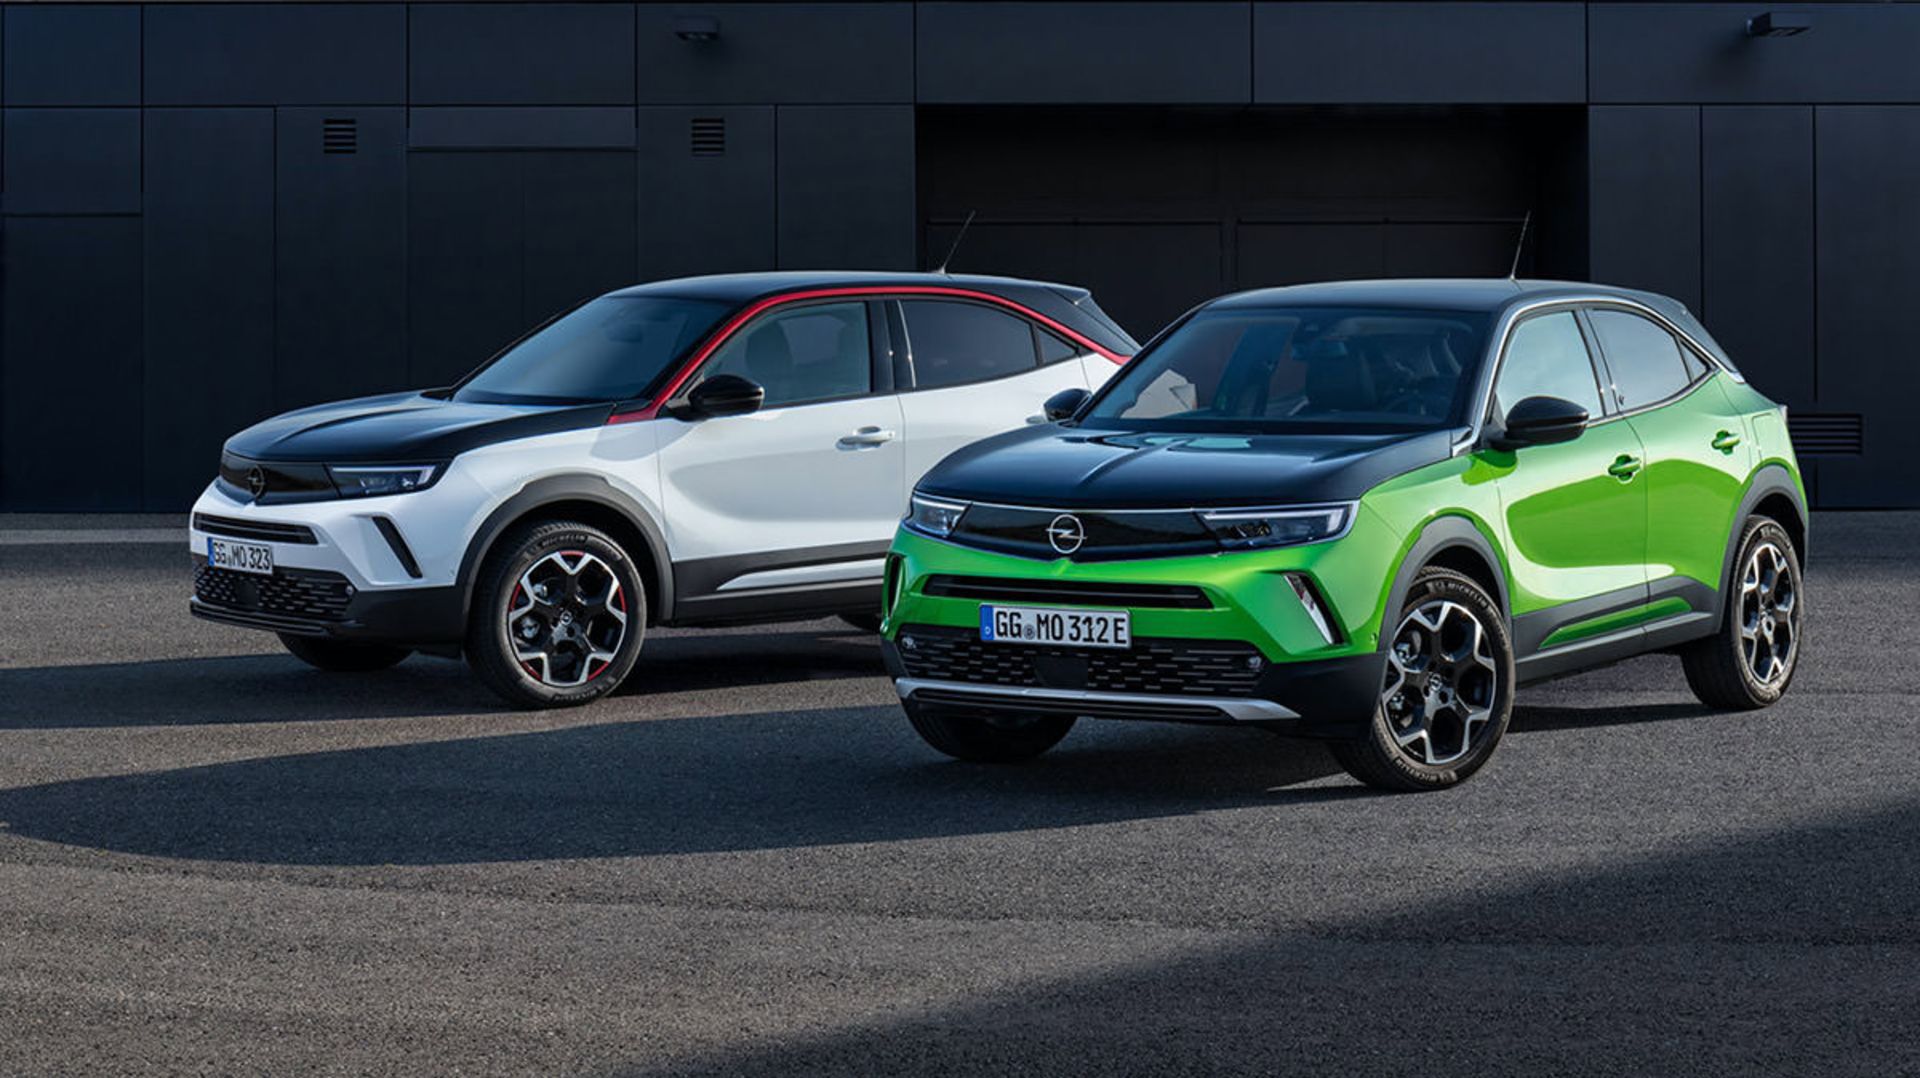 کراس اور کامپکت اوپل موکا 2021 / Opel Mokka در رنگ های سبز و سفید با طرح رنگ دوتایی